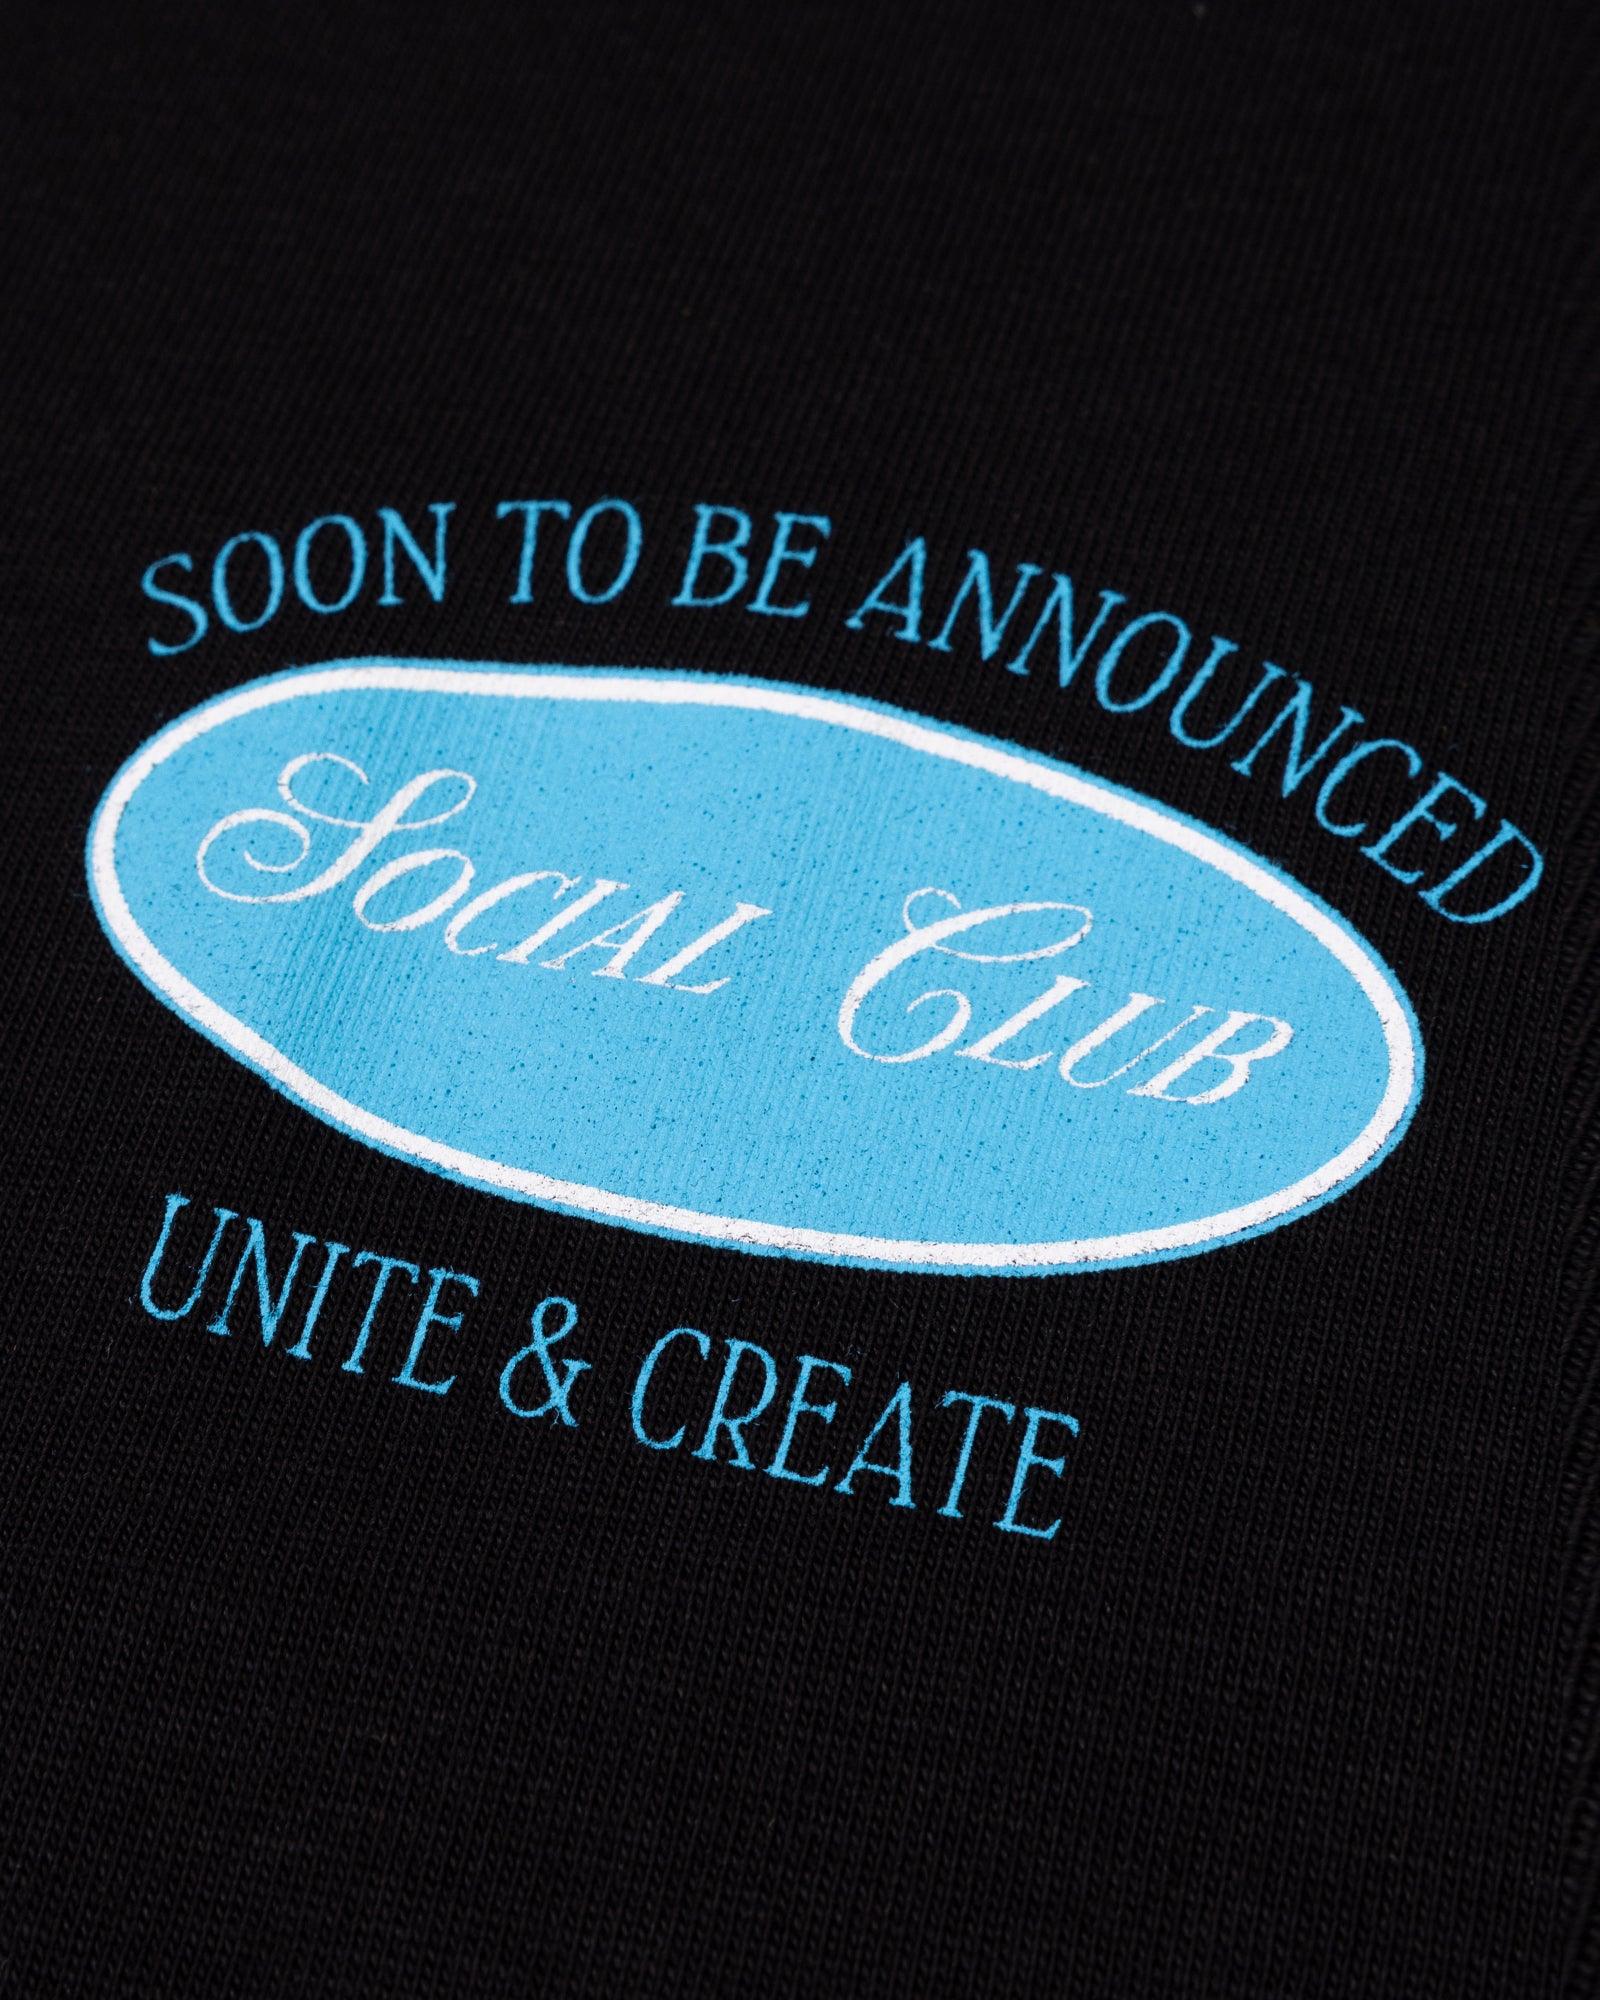 Social Club Crop T-Shirt - SOON TO BE ANNOUNCED